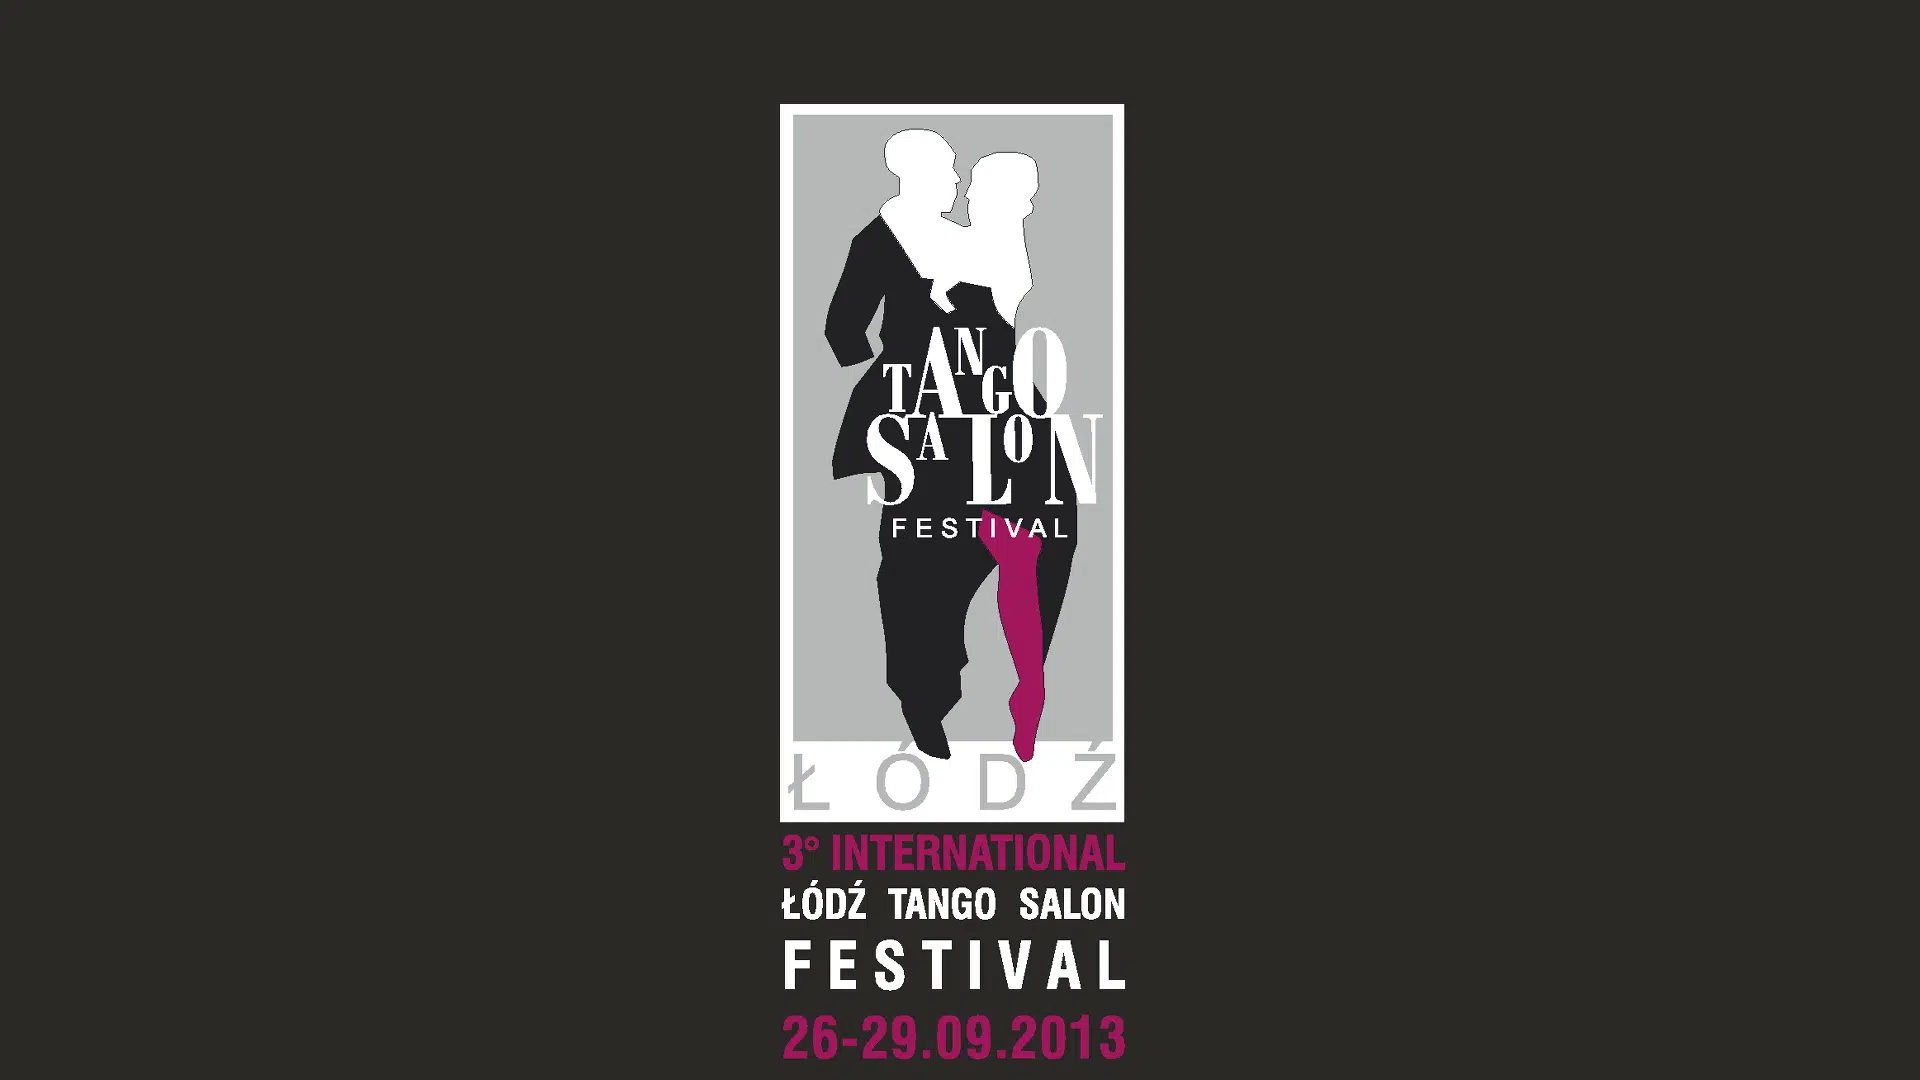 Lodz Tango Salon Festival 2013 Preview Image